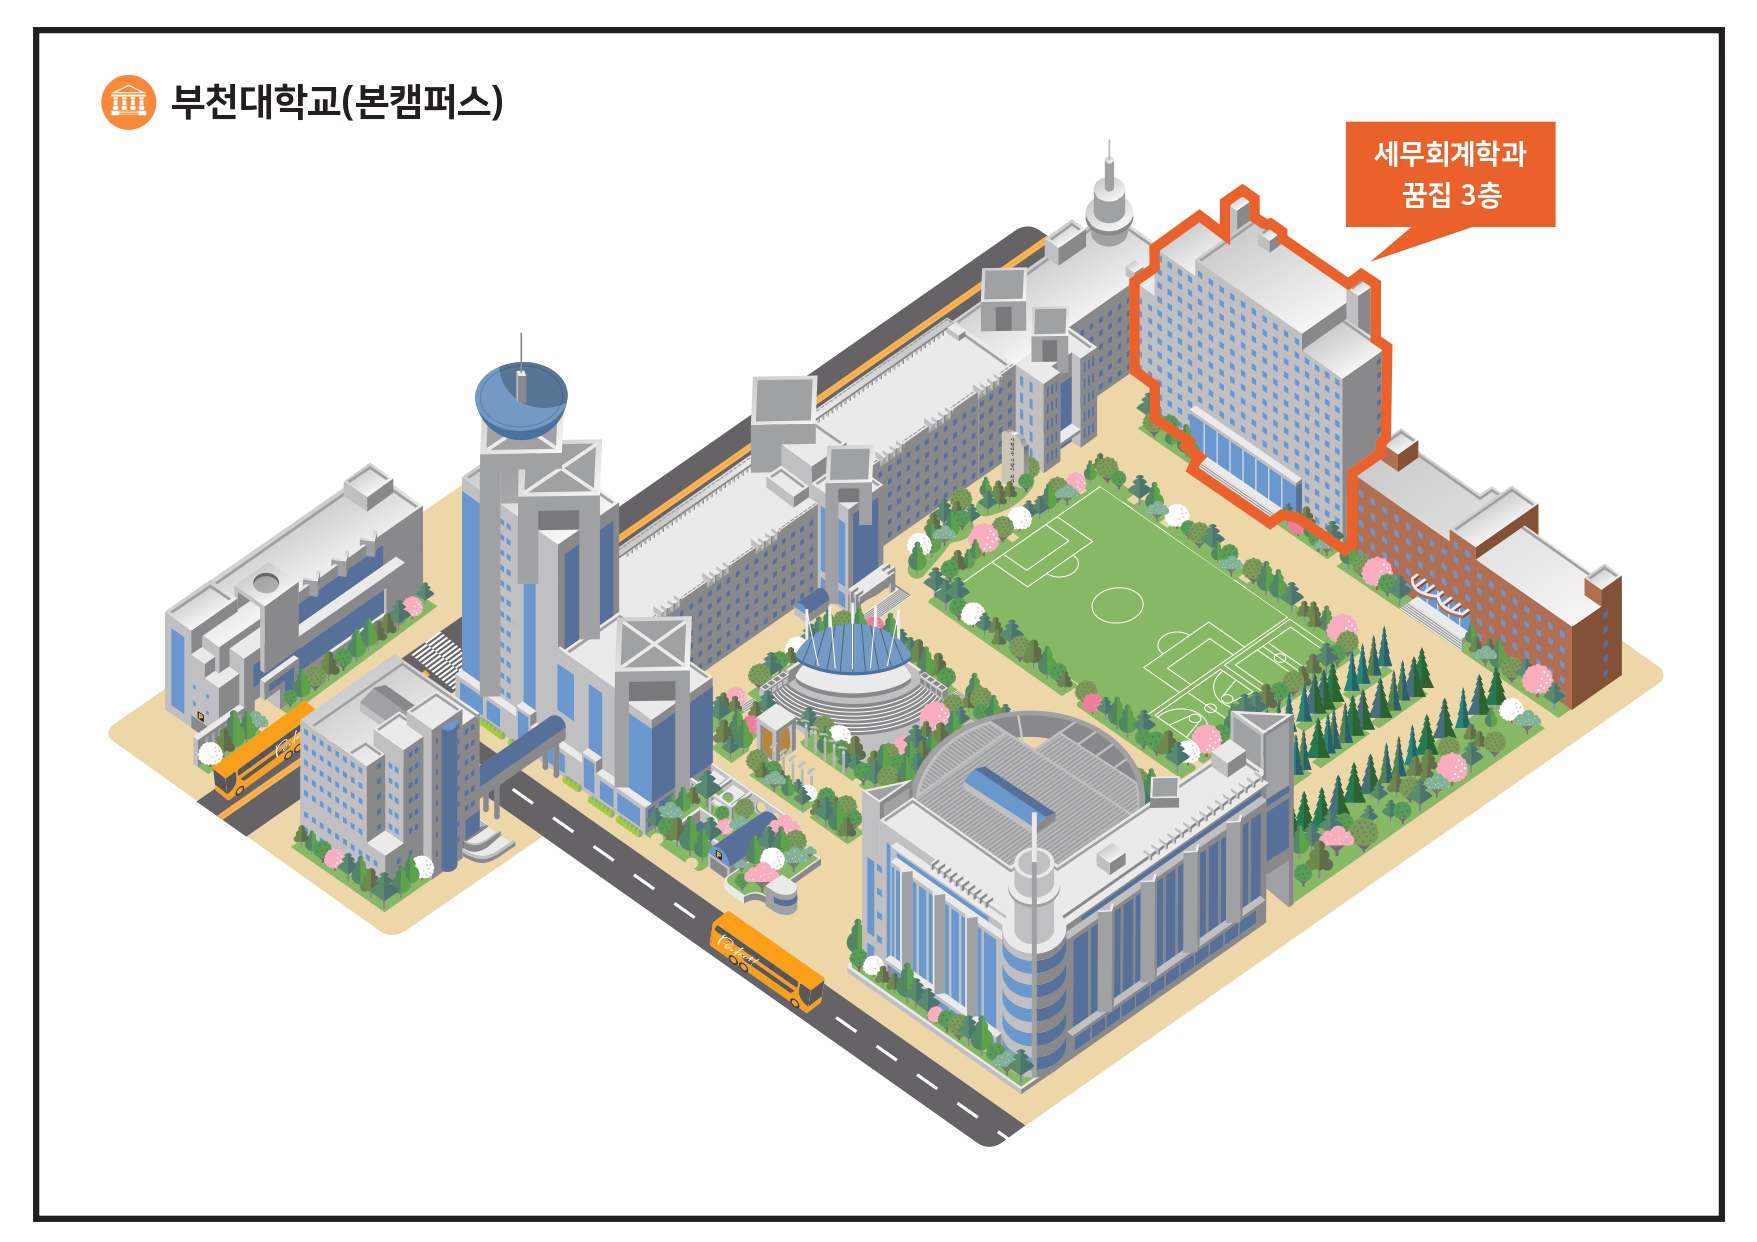 부천대학교(본캠퍼스) 세무회계과 꿈집 3층